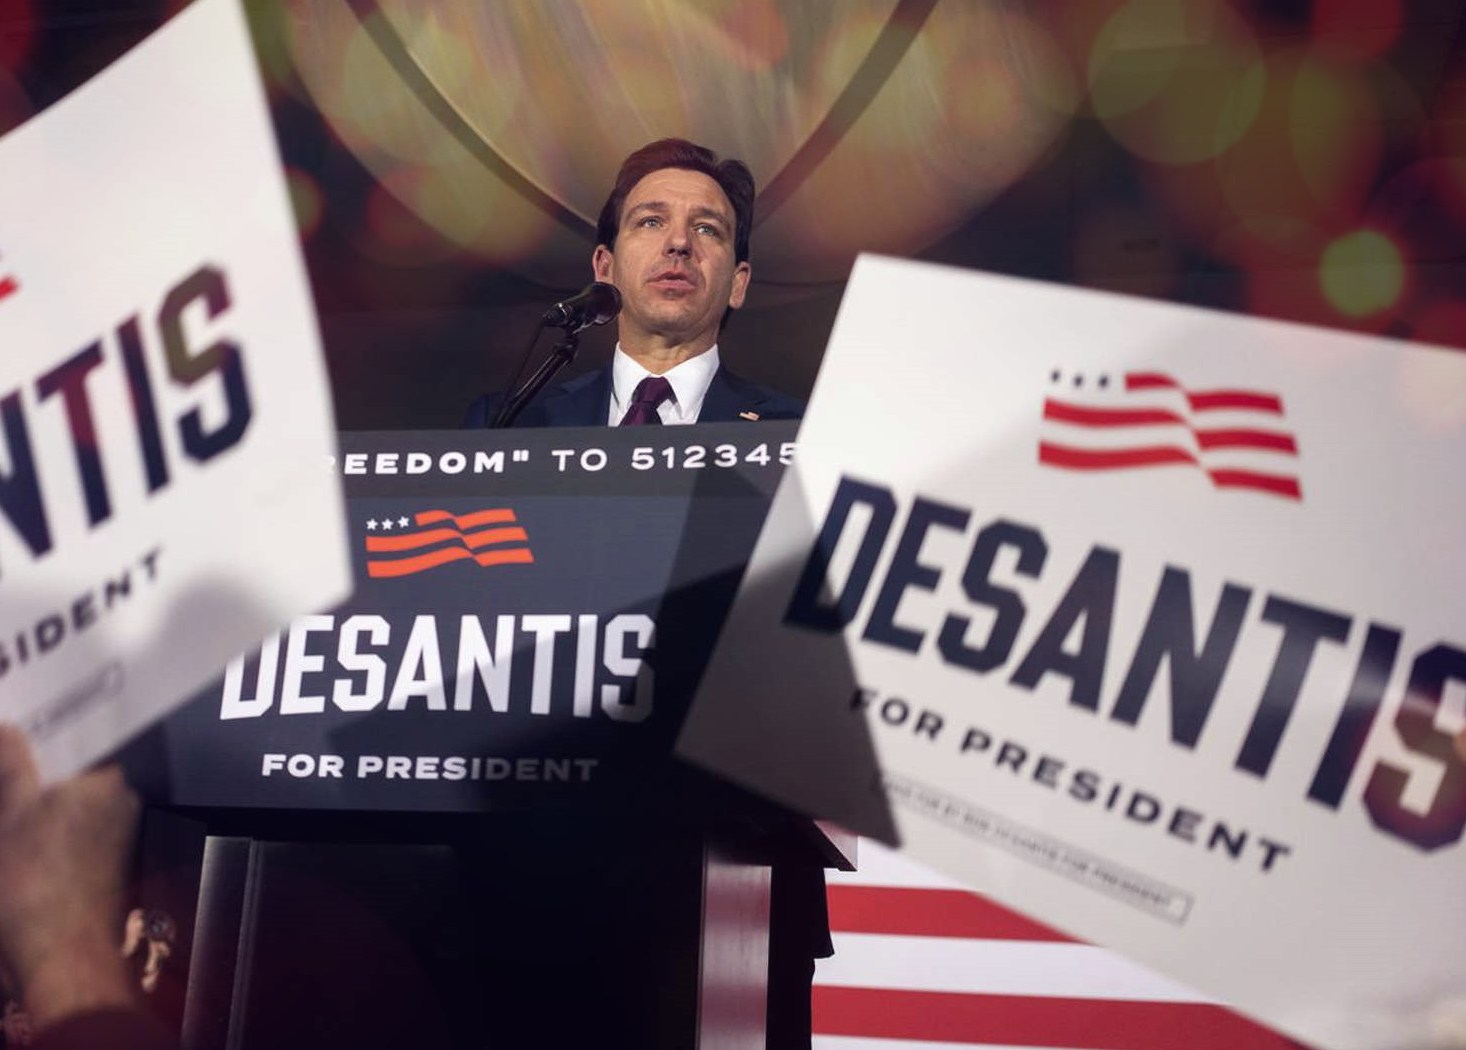 Ron DeSantis ends Presidential Campaign, endorses Donald Trump